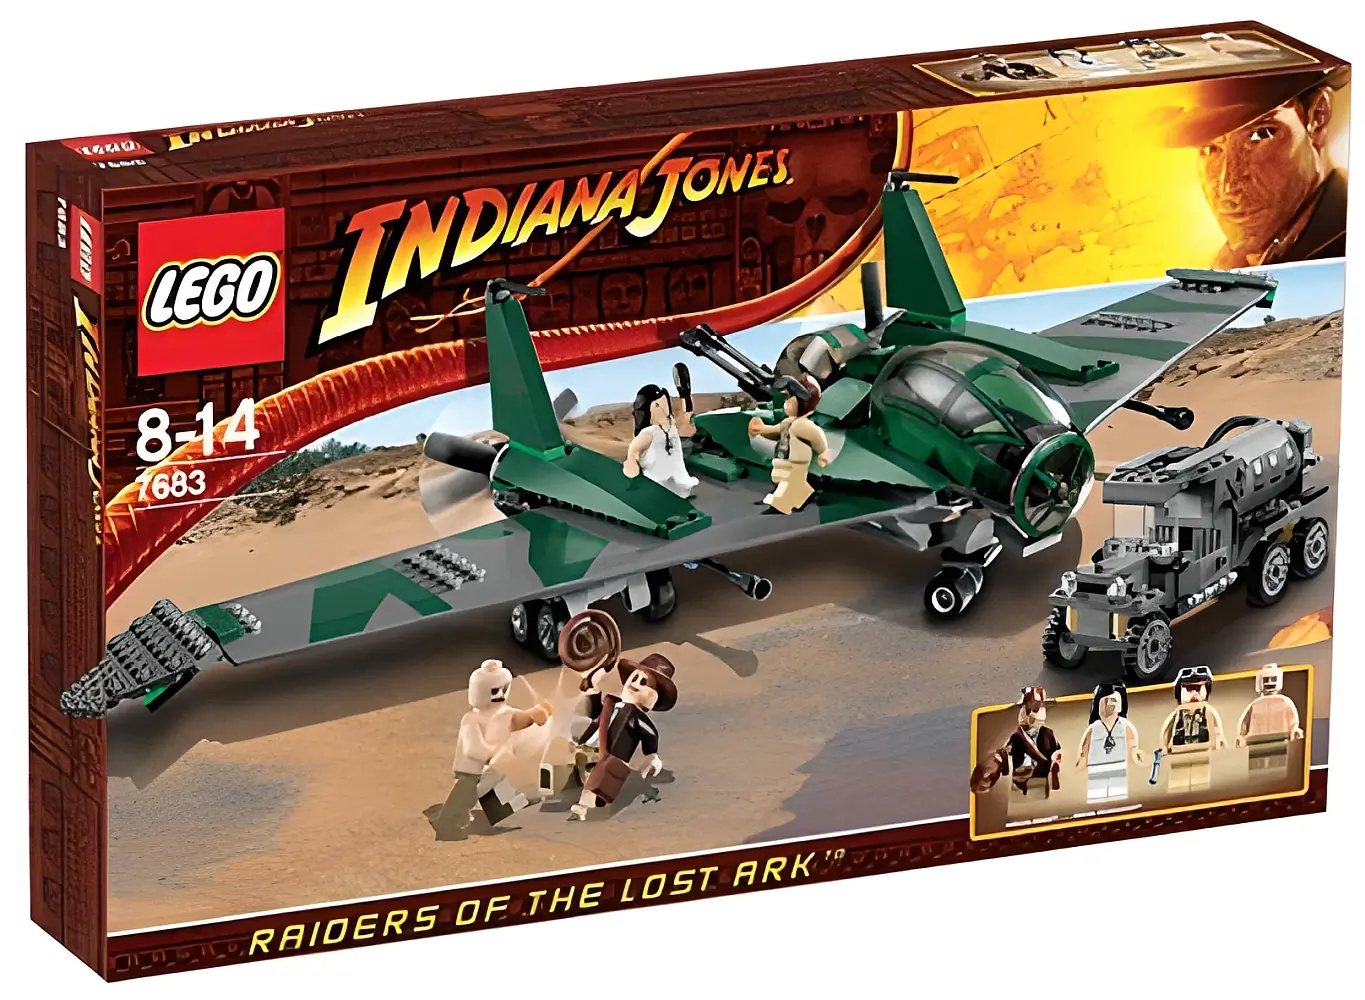 Pudełko zestawu 7683 z serii Indiana Jones – ucieczka samolotem z arką przymierza